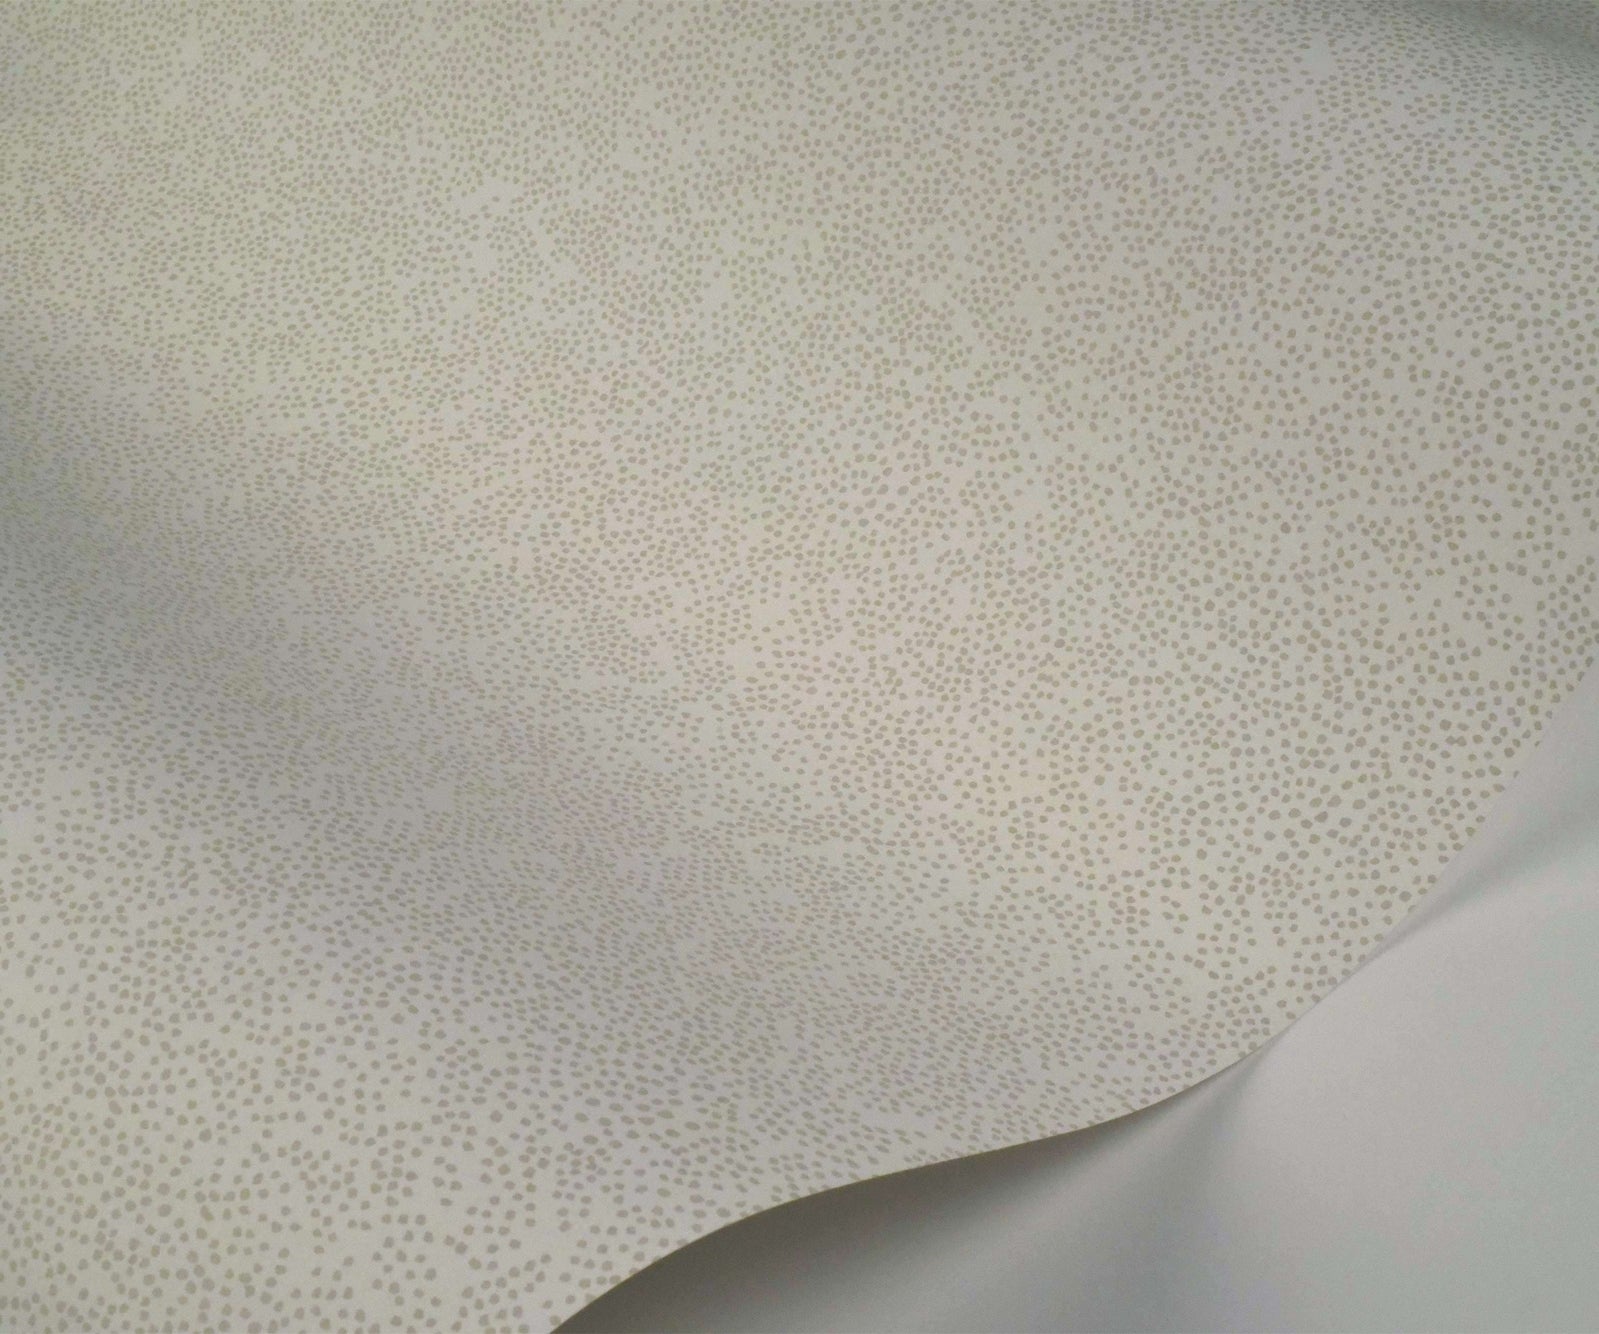 Champagne Dots Wallpaper - White - Rifle